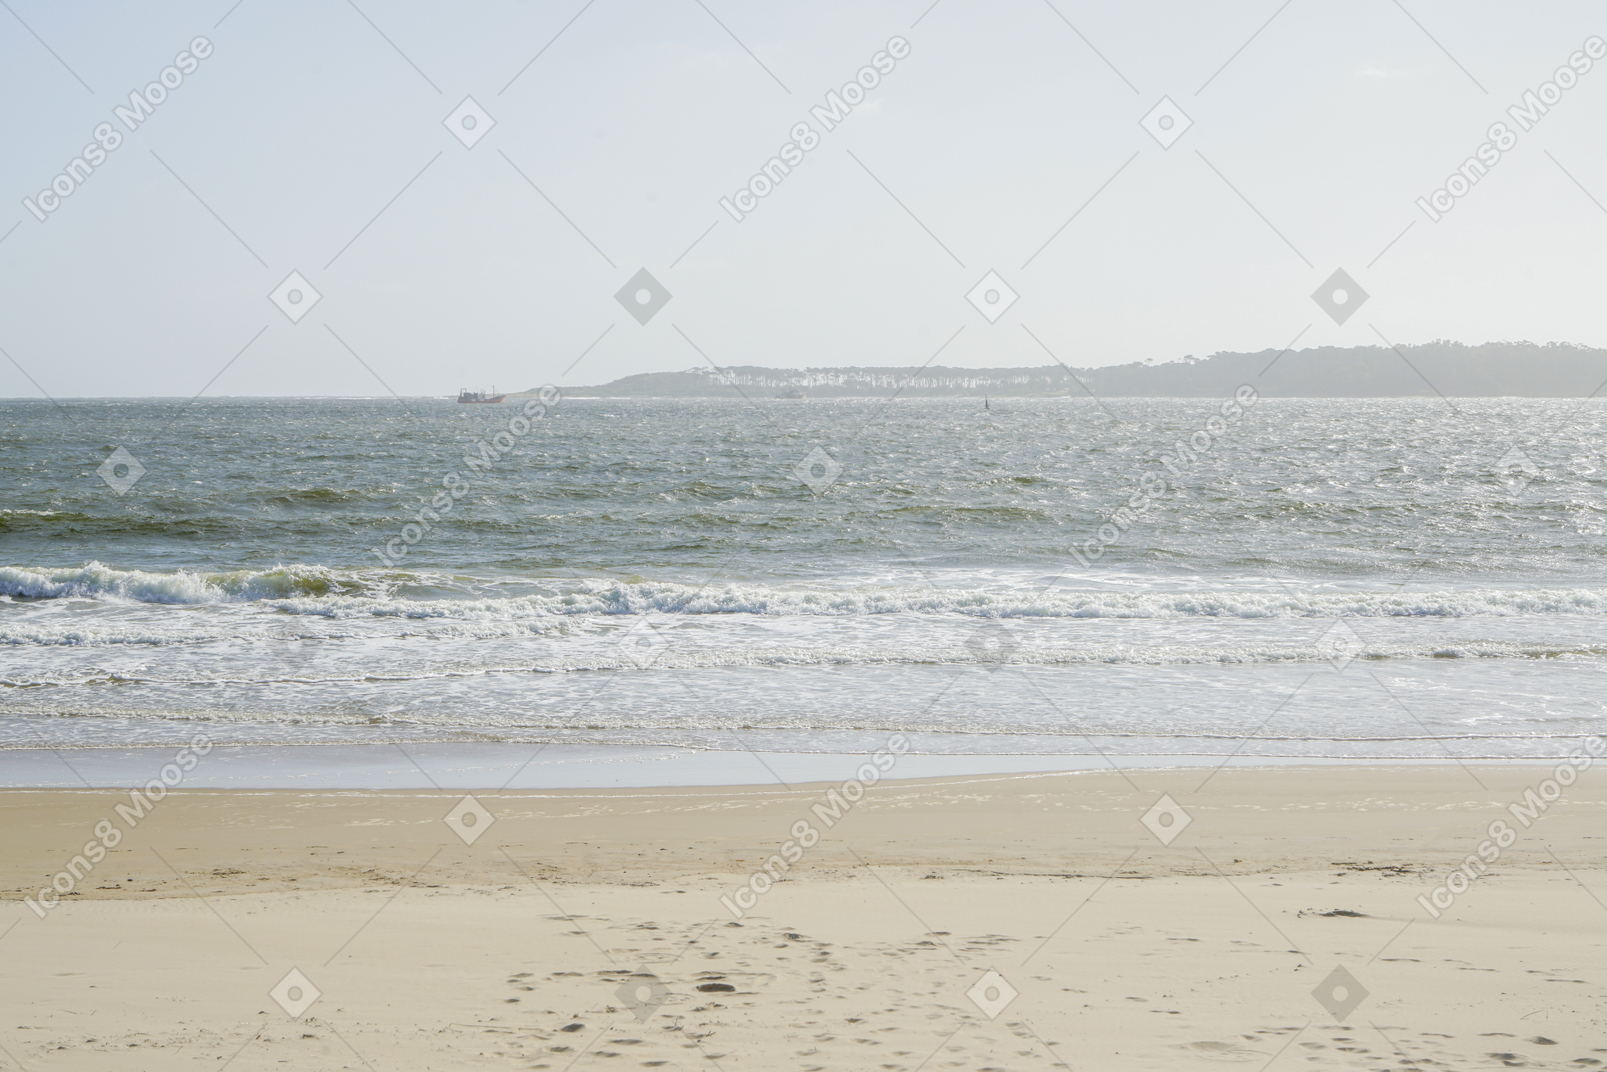 Praia de areia, mar e colinas à distância